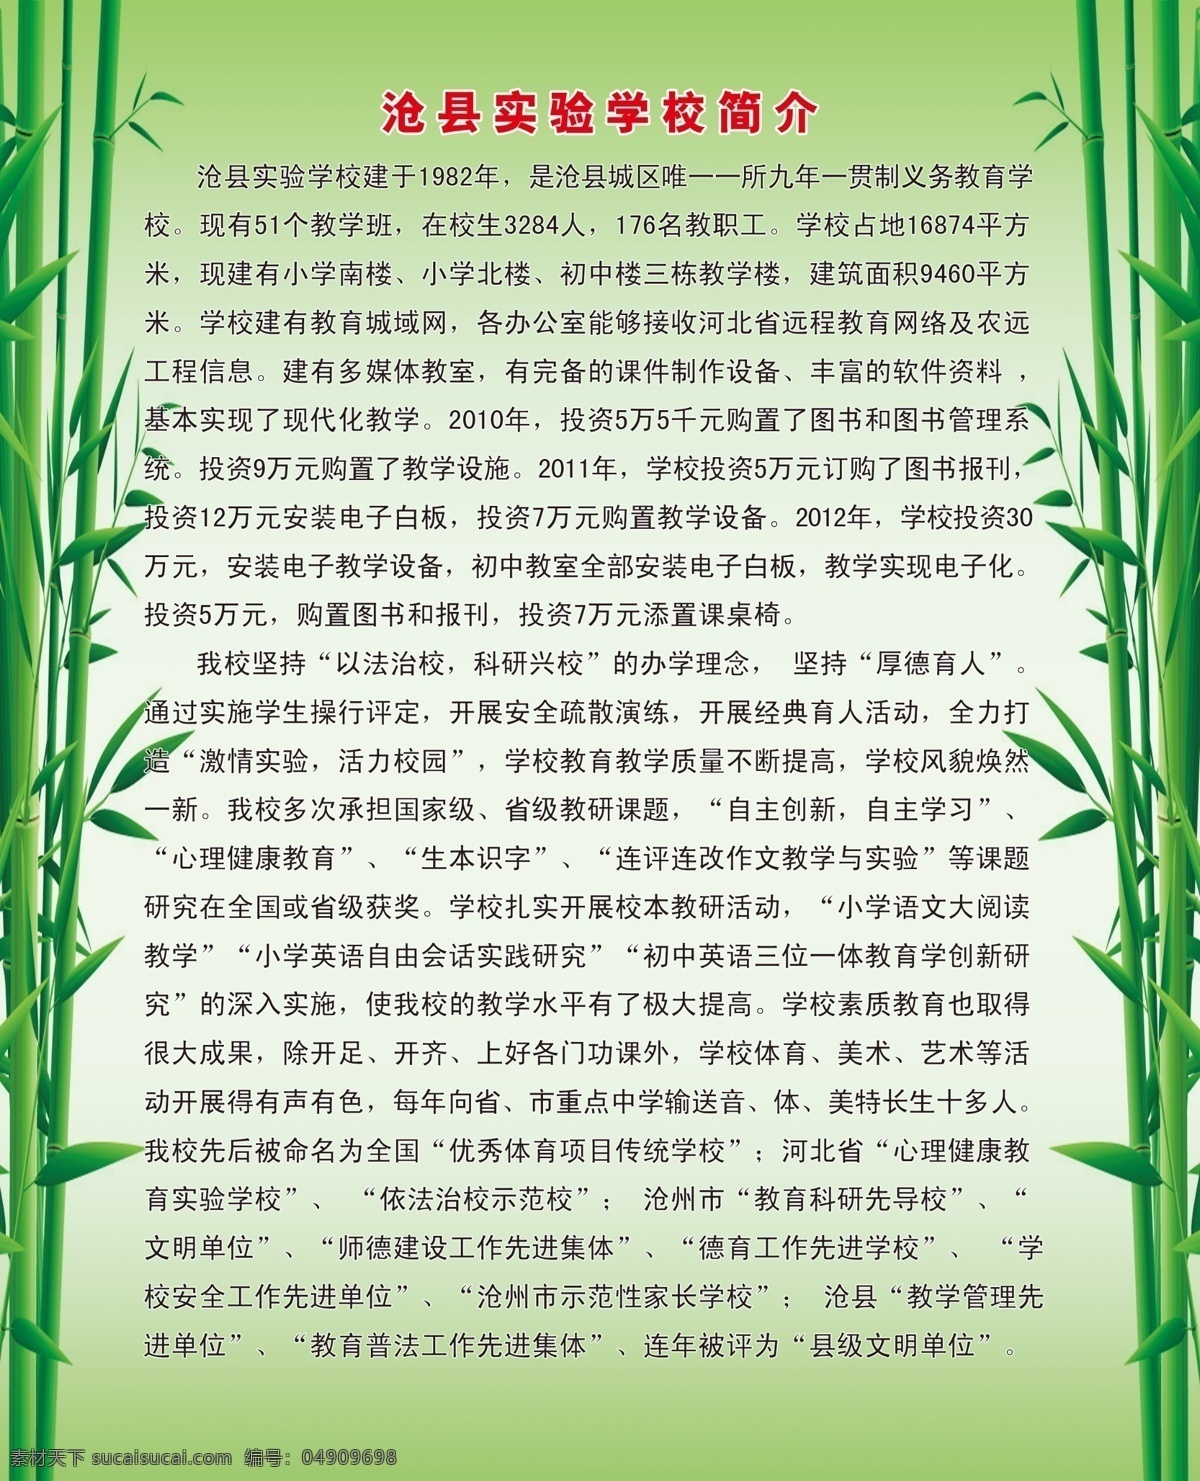 沧县 实验 学校简介 展板 背景 高档展板 公司展板 科技展板 企业展板 学校展板 展板模板 制度展板 高档 系列 模板 绿色